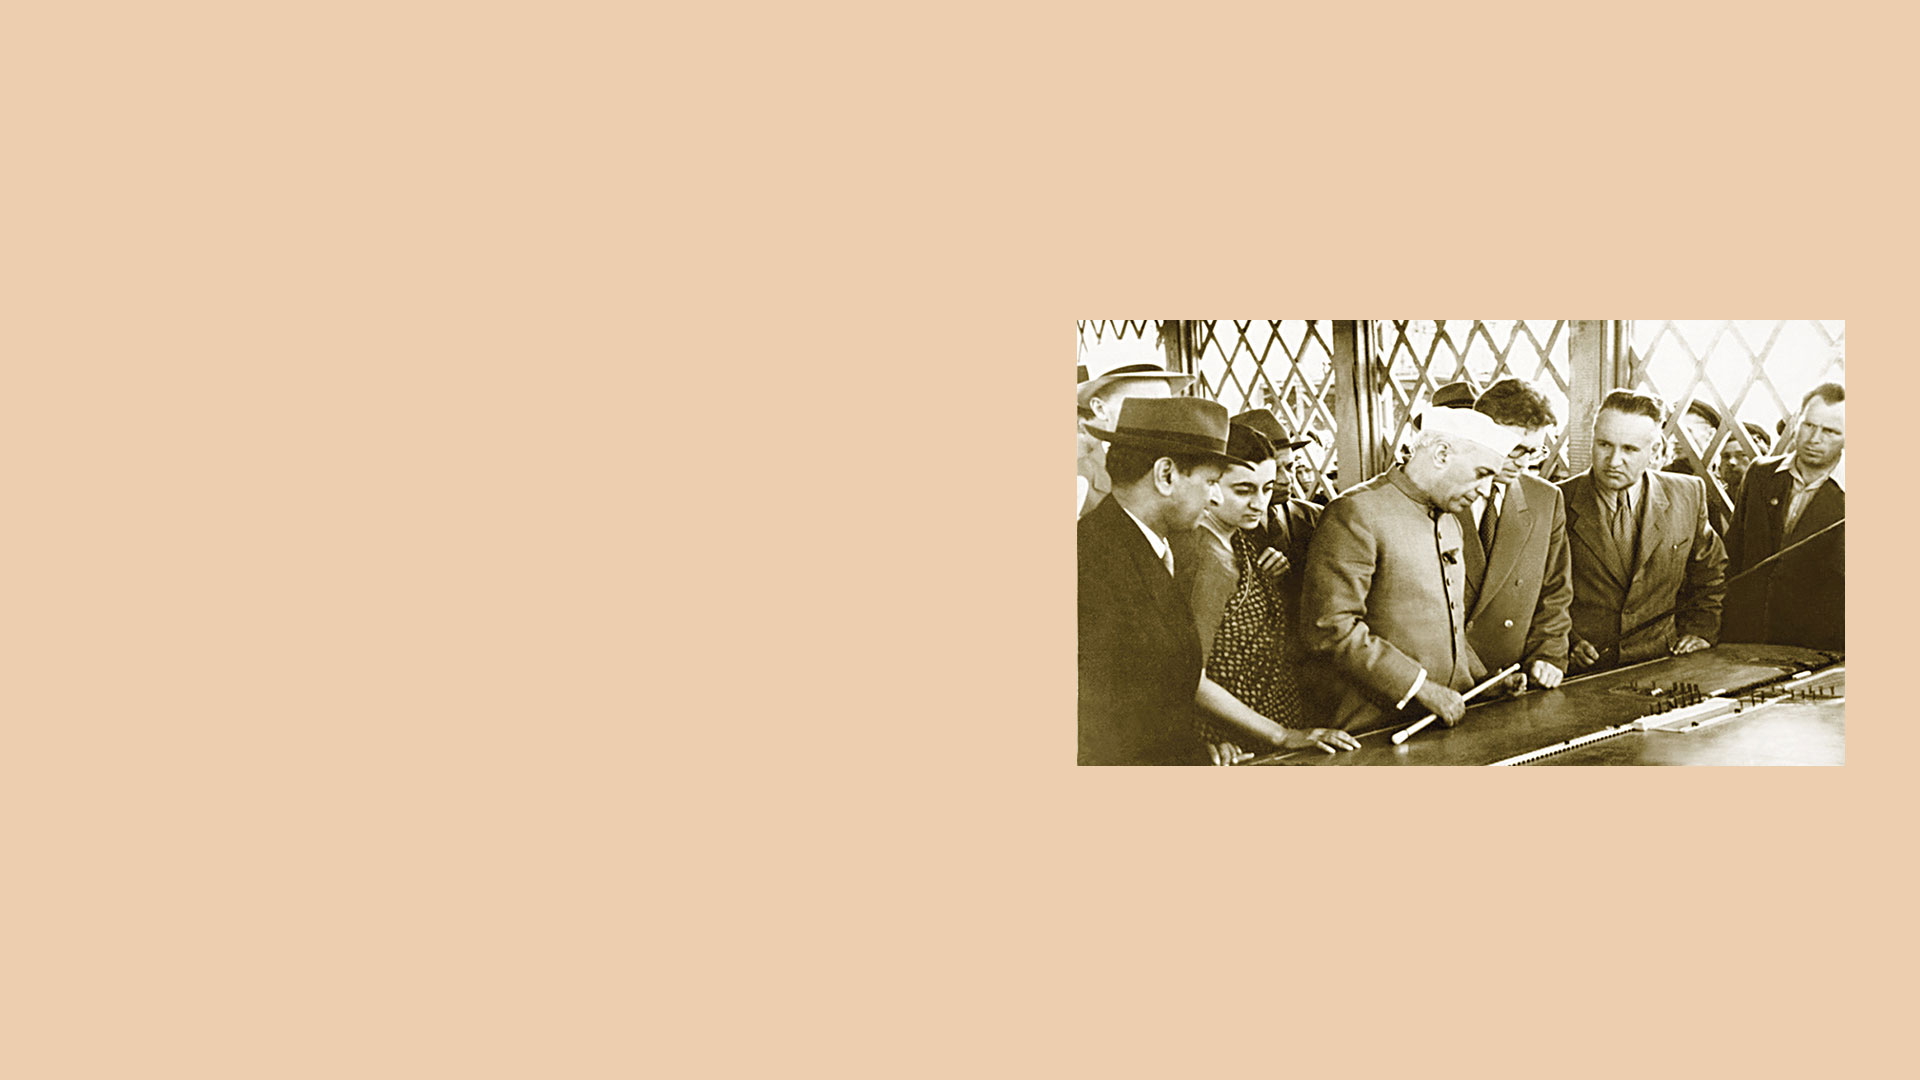 Посещение строительства Волжской ГЭС премьер-министром Индии Д. Неру с дочерью И. Ганди. 1955 год | The Prime Minister of India, Jawaharlal Nehru, and his daughter Indira Gandhi, visiting the construction site of the Volzhskaya HPP, 1955